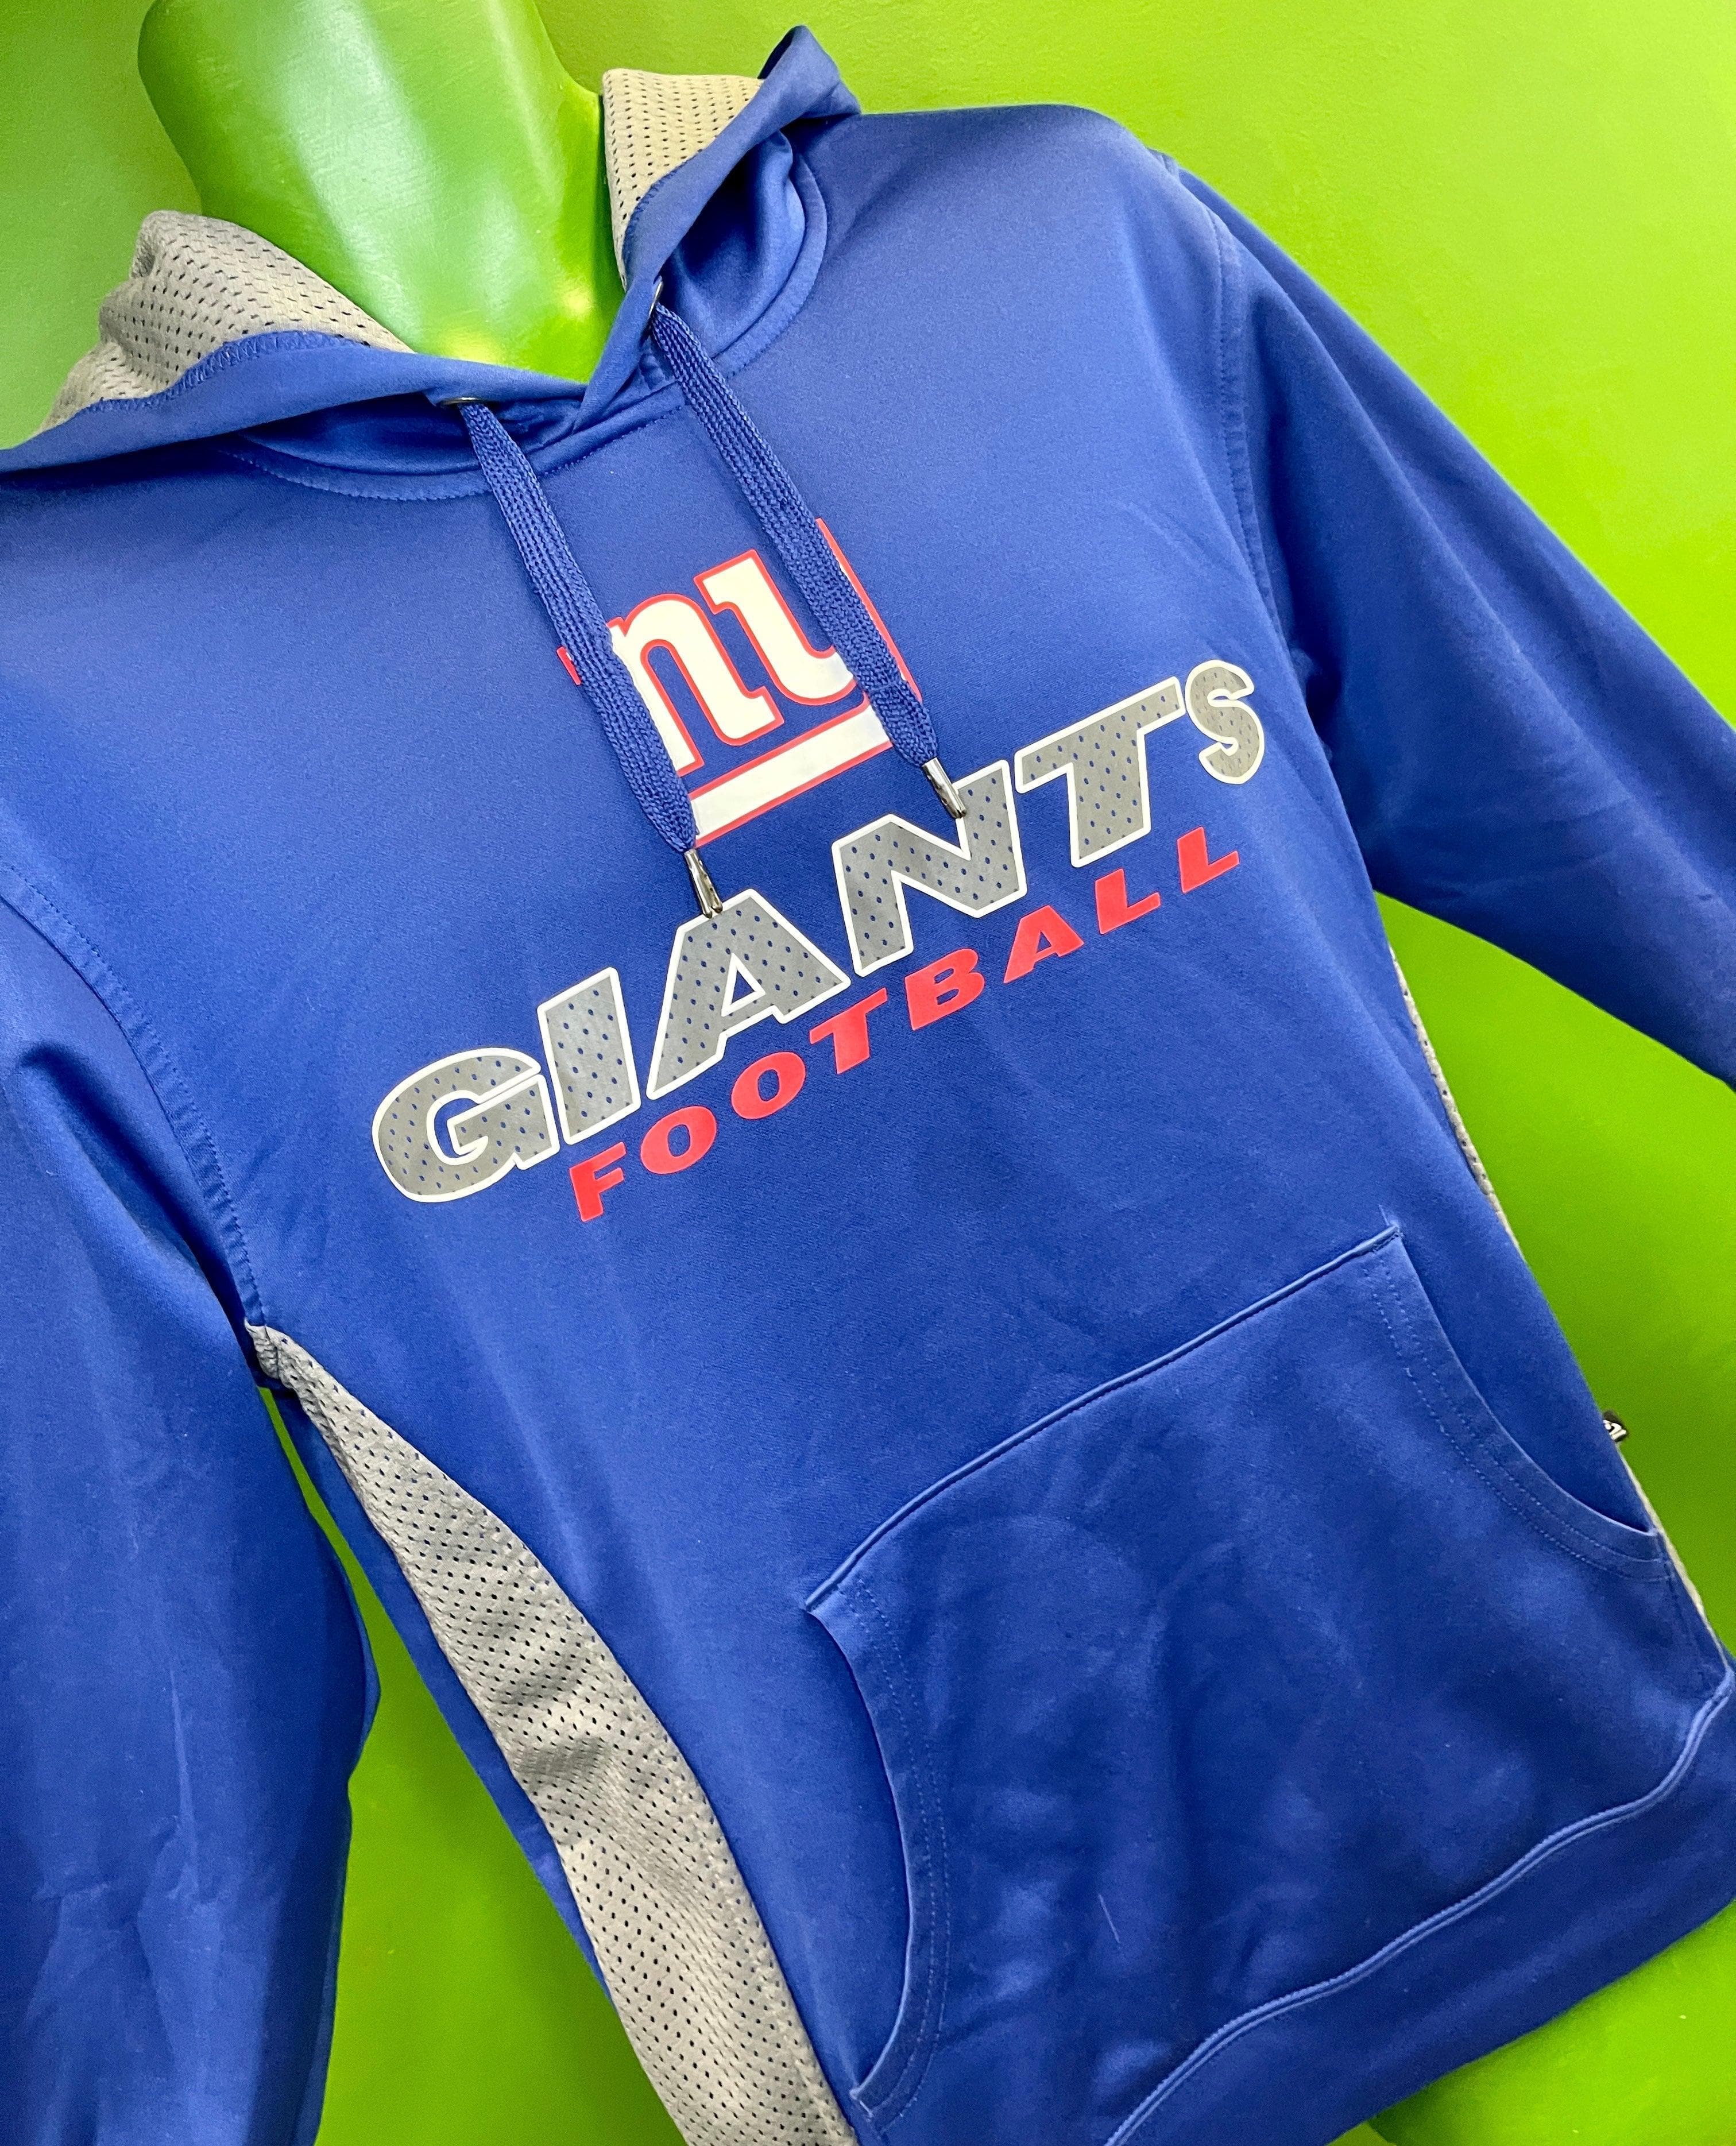 NFL New York Giants Pullover Hoodie Sweatshirt Men's Small